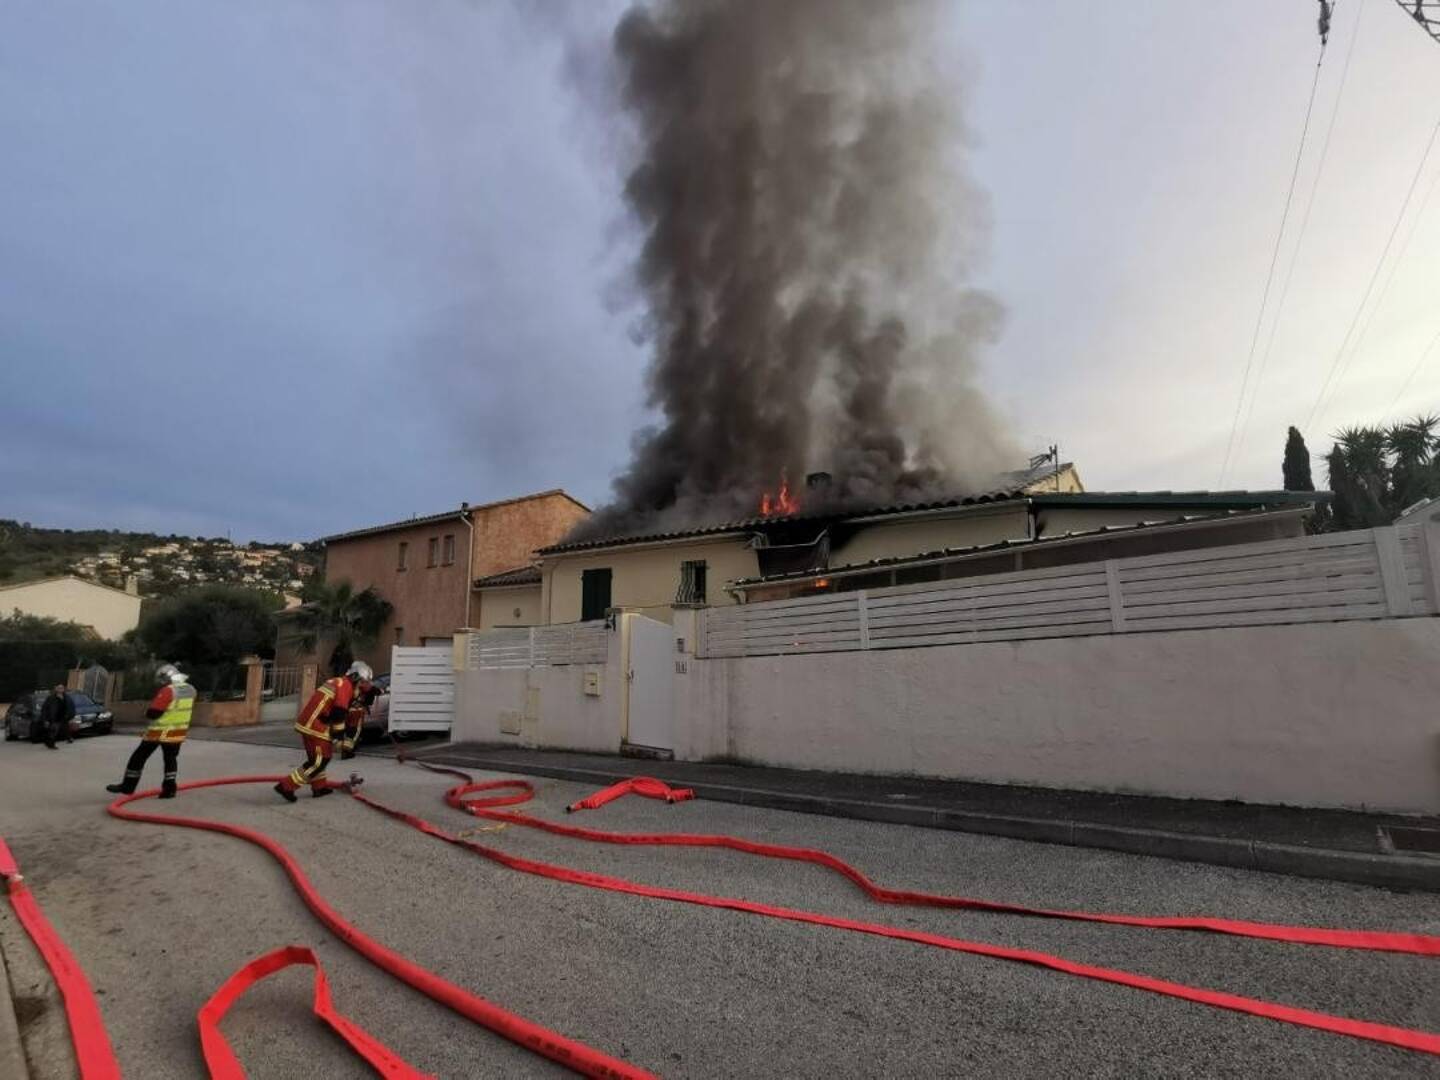 Les flammes de l’incendie étaient visibles sur la toiture qui s’est effondrée.